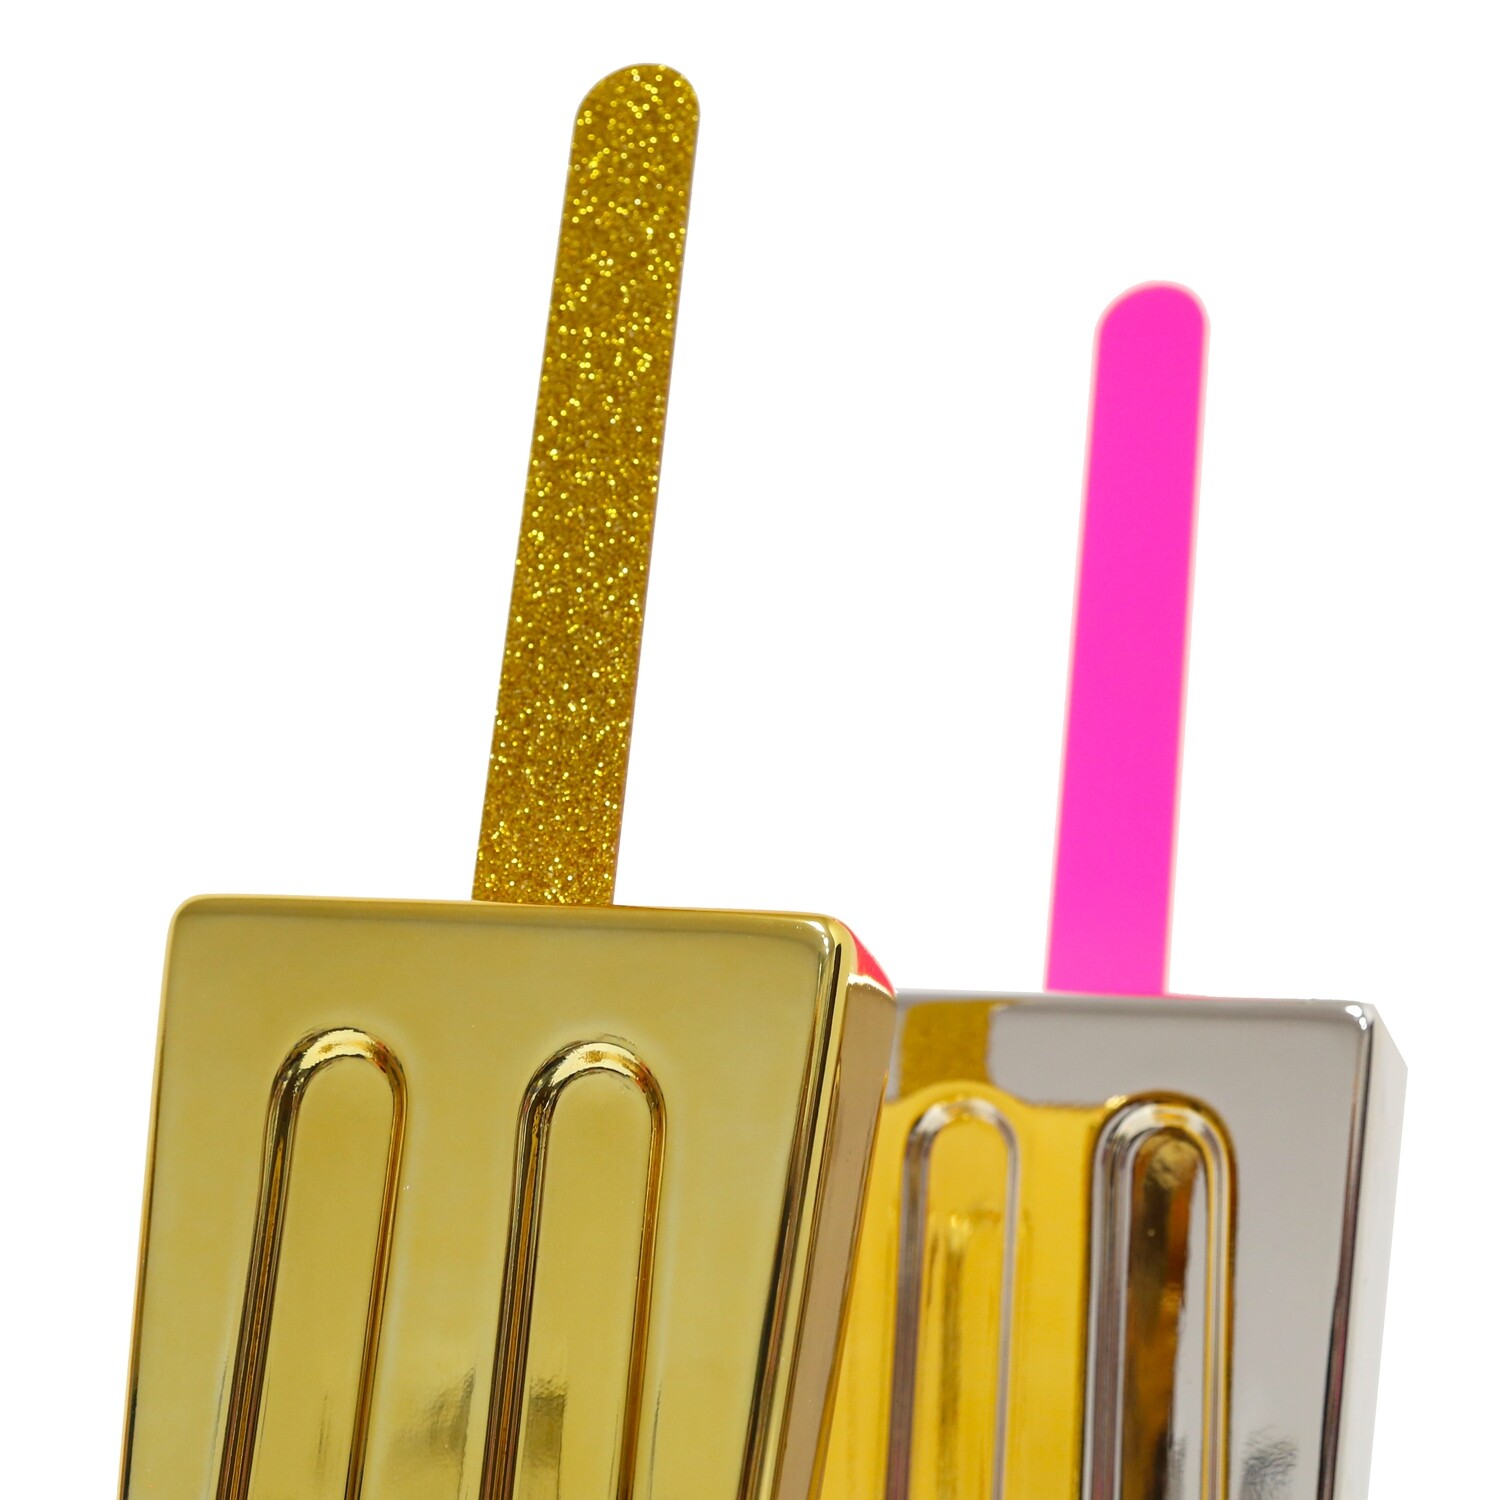 Melting Popsicle Art - Gold Chrome Pop - Original Melting Pops